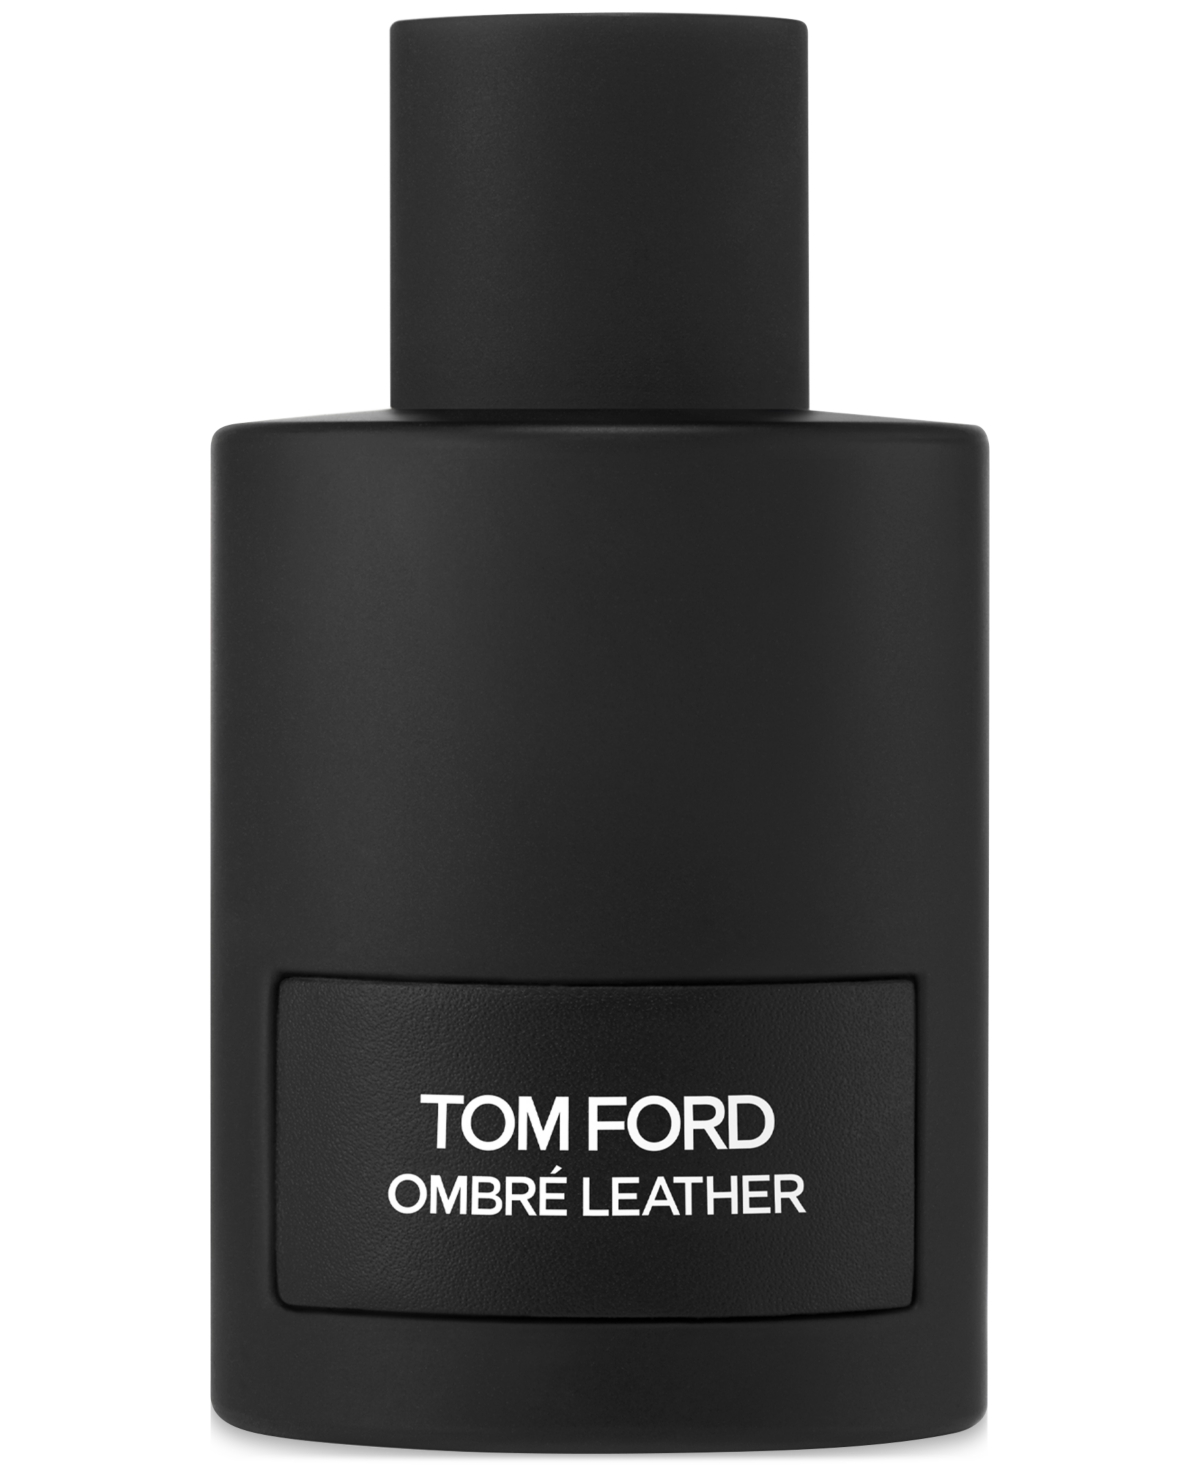 Tom Ford Ombre Leather Eau De Parfum Spray, 5.1 Oz.